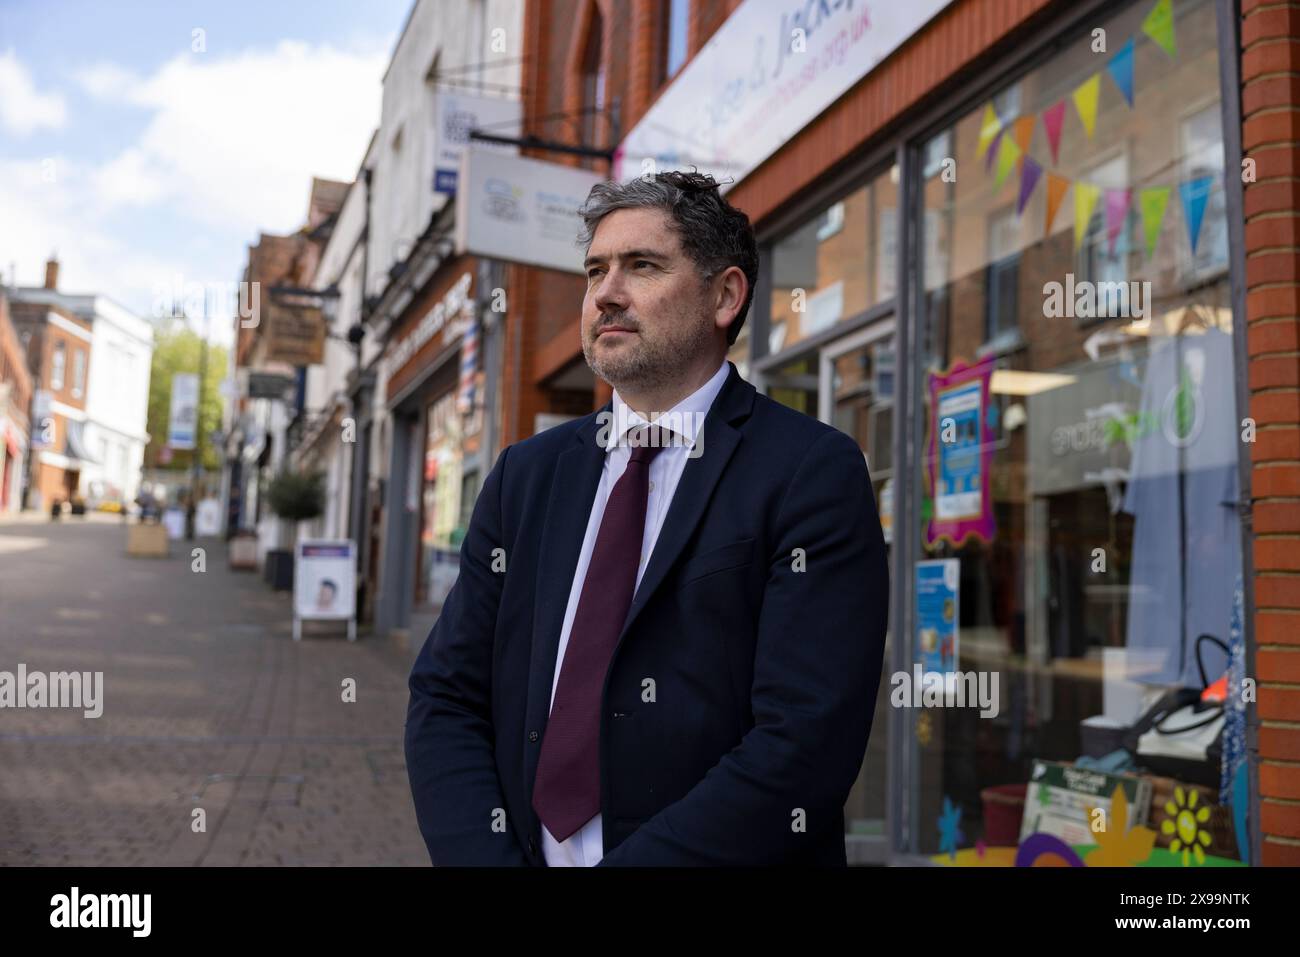 Luke Murphy, candidato parlamentare laburista per Basingstoke alle prossime elezioni generali, Inghilterra, Regno Unito Foto Stock